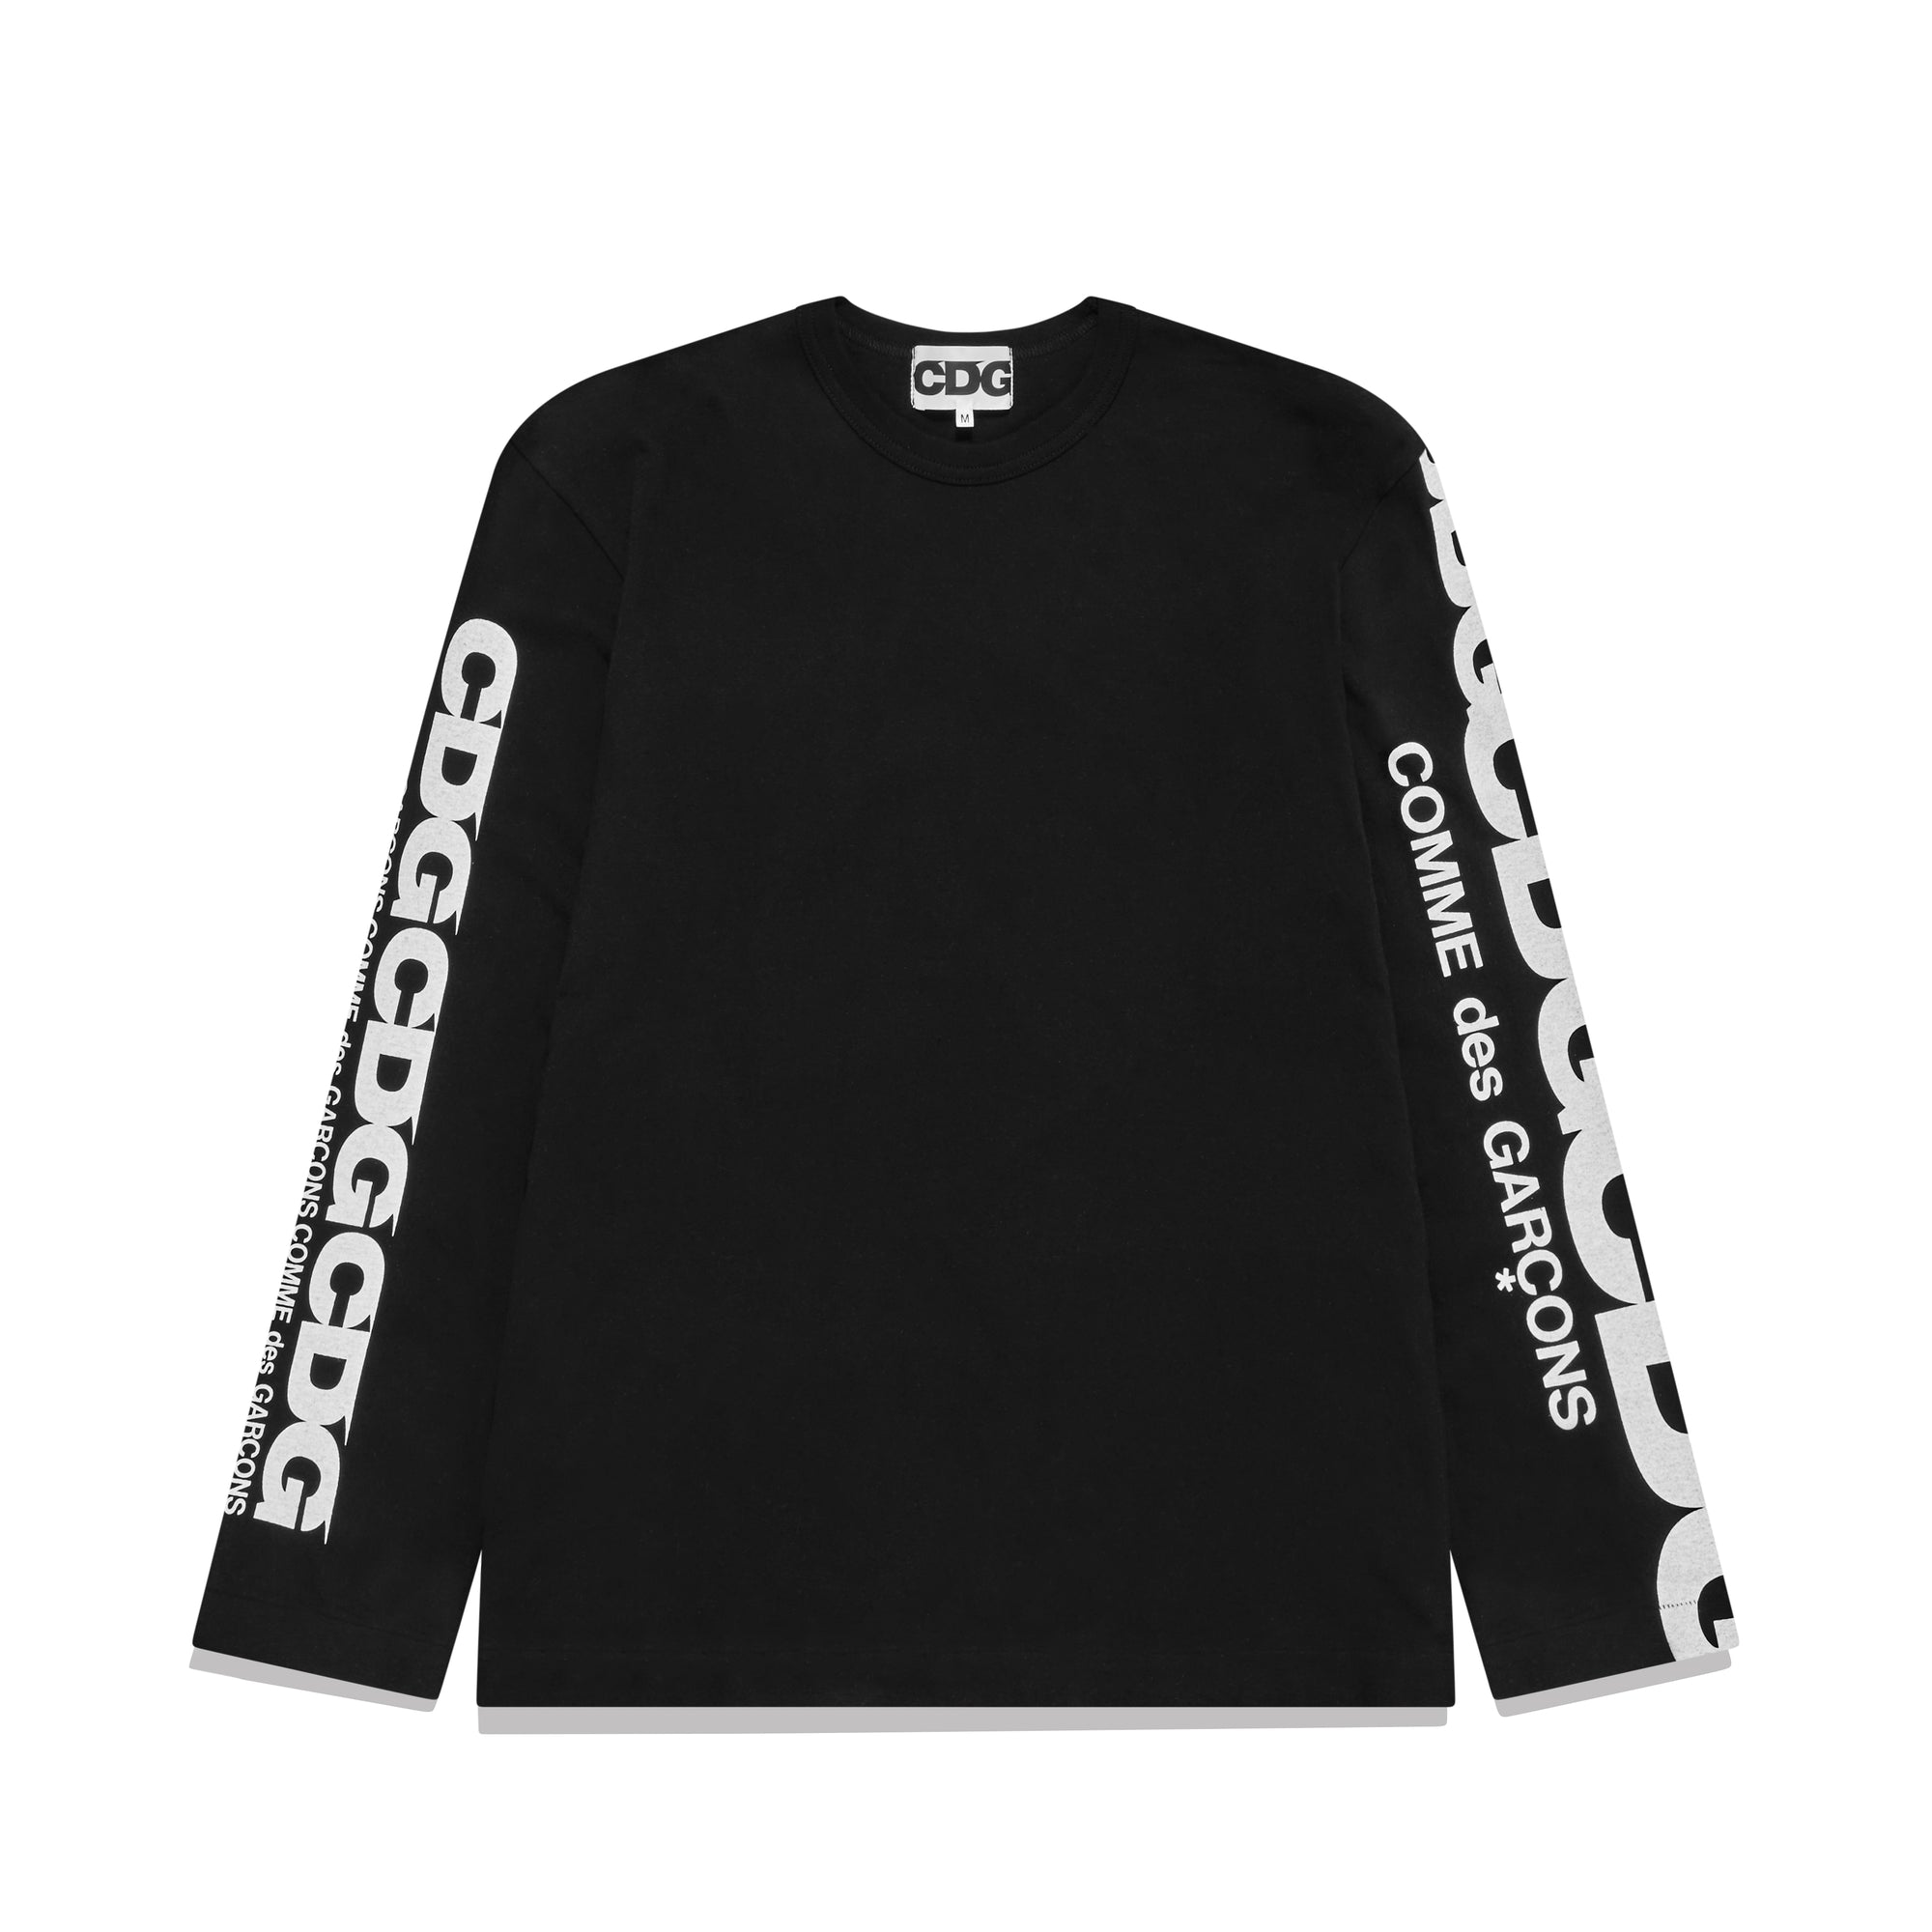 CDG - Long Sleeve T-Shirt - (Black) view 1